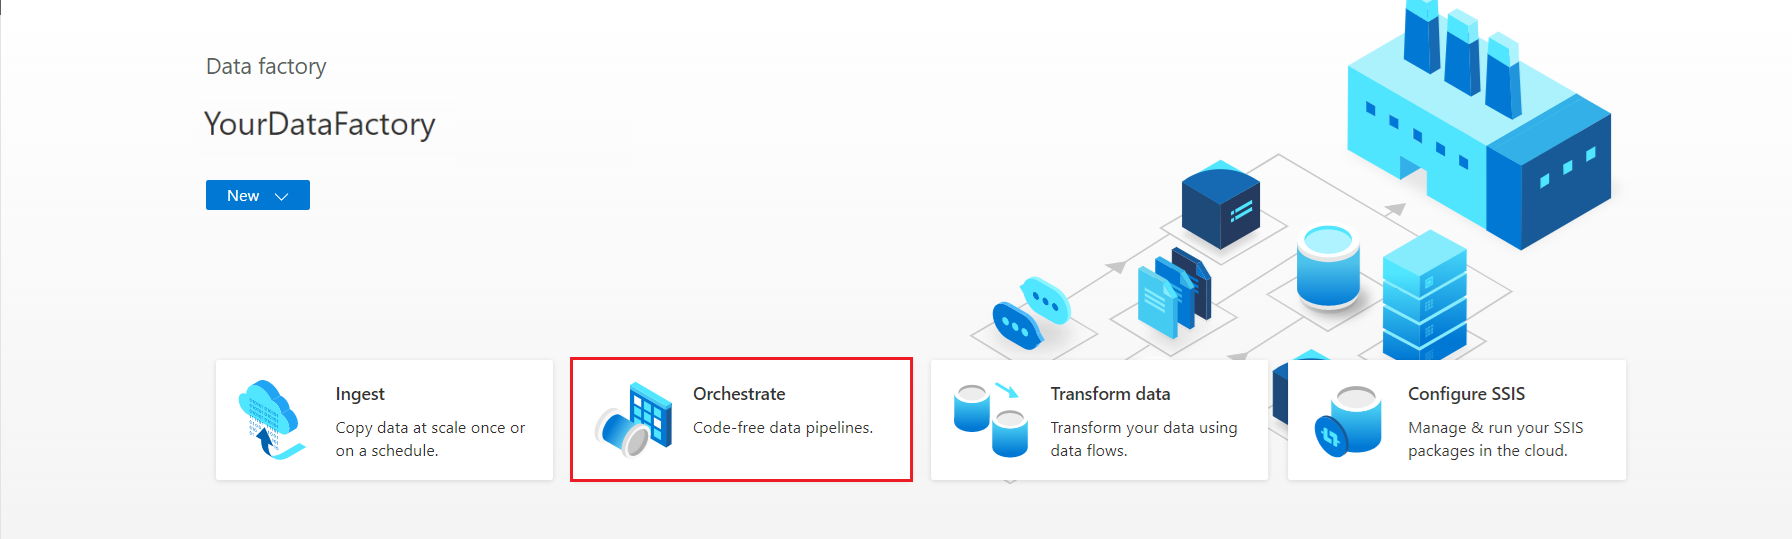 Azure Data Factory'nin 'Orchestrate' sayfasını gösteren ekran görüntüsü.